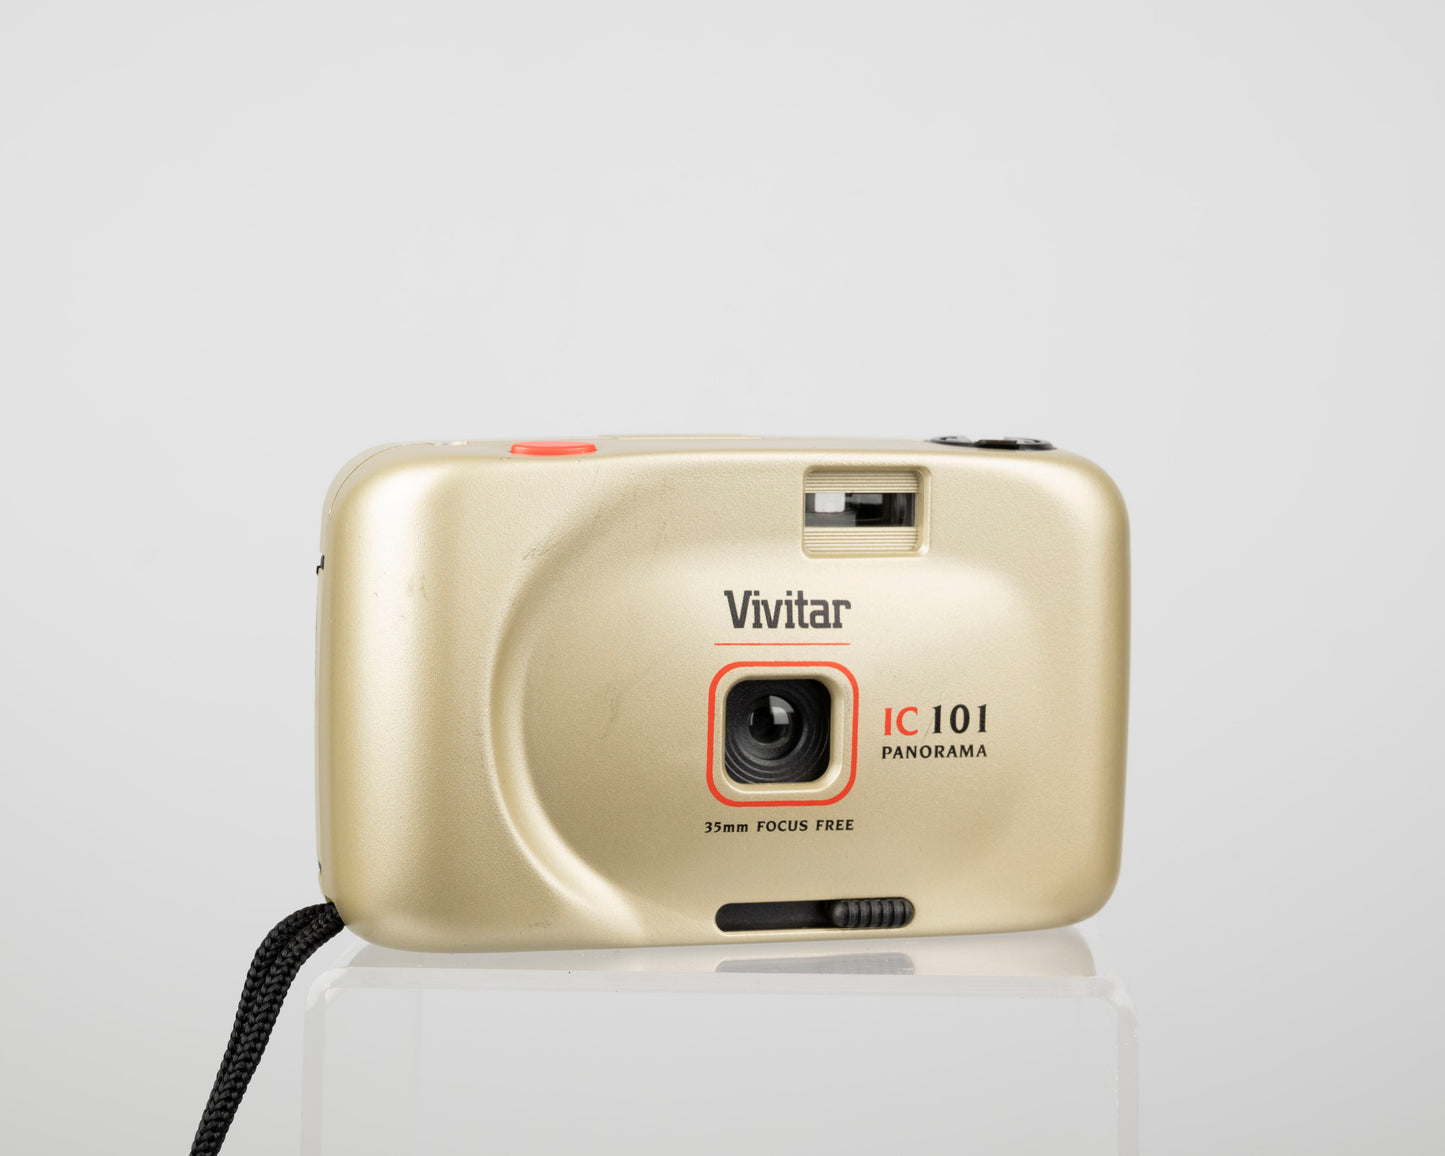 Vivitar IC 101 Panorama 35mm camera w/ original box and manual